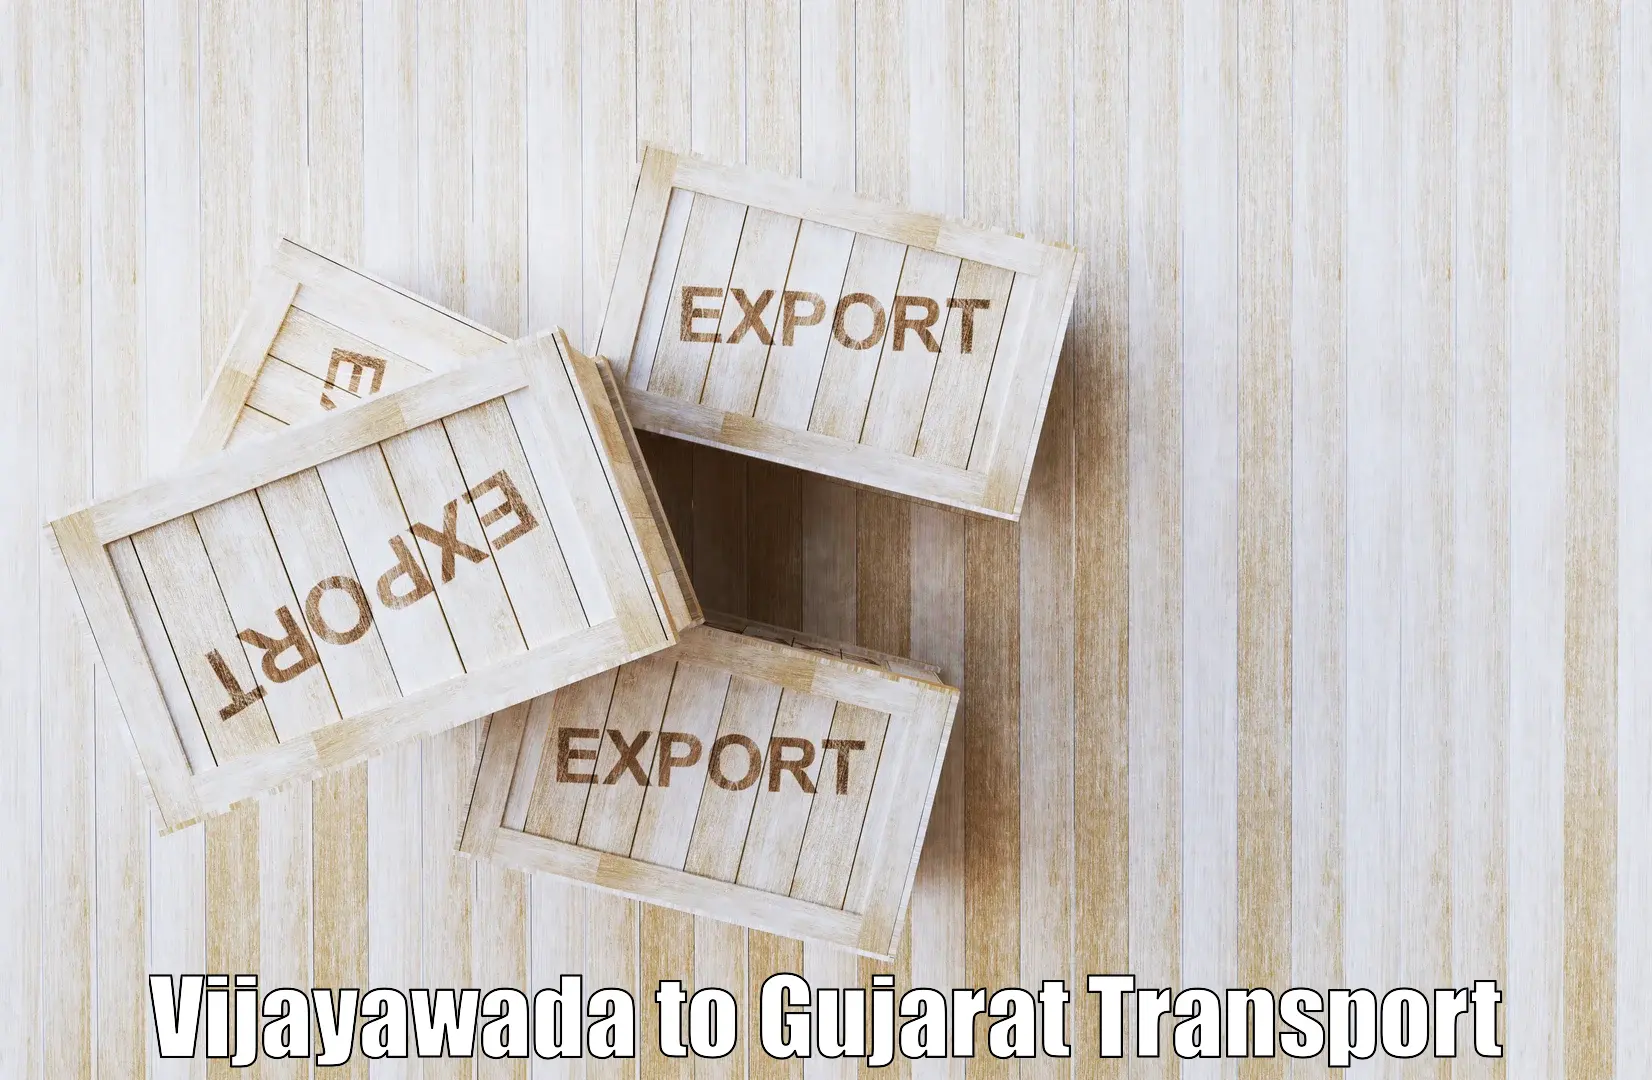 Express transport services Vijayawada to Patan Gujarat